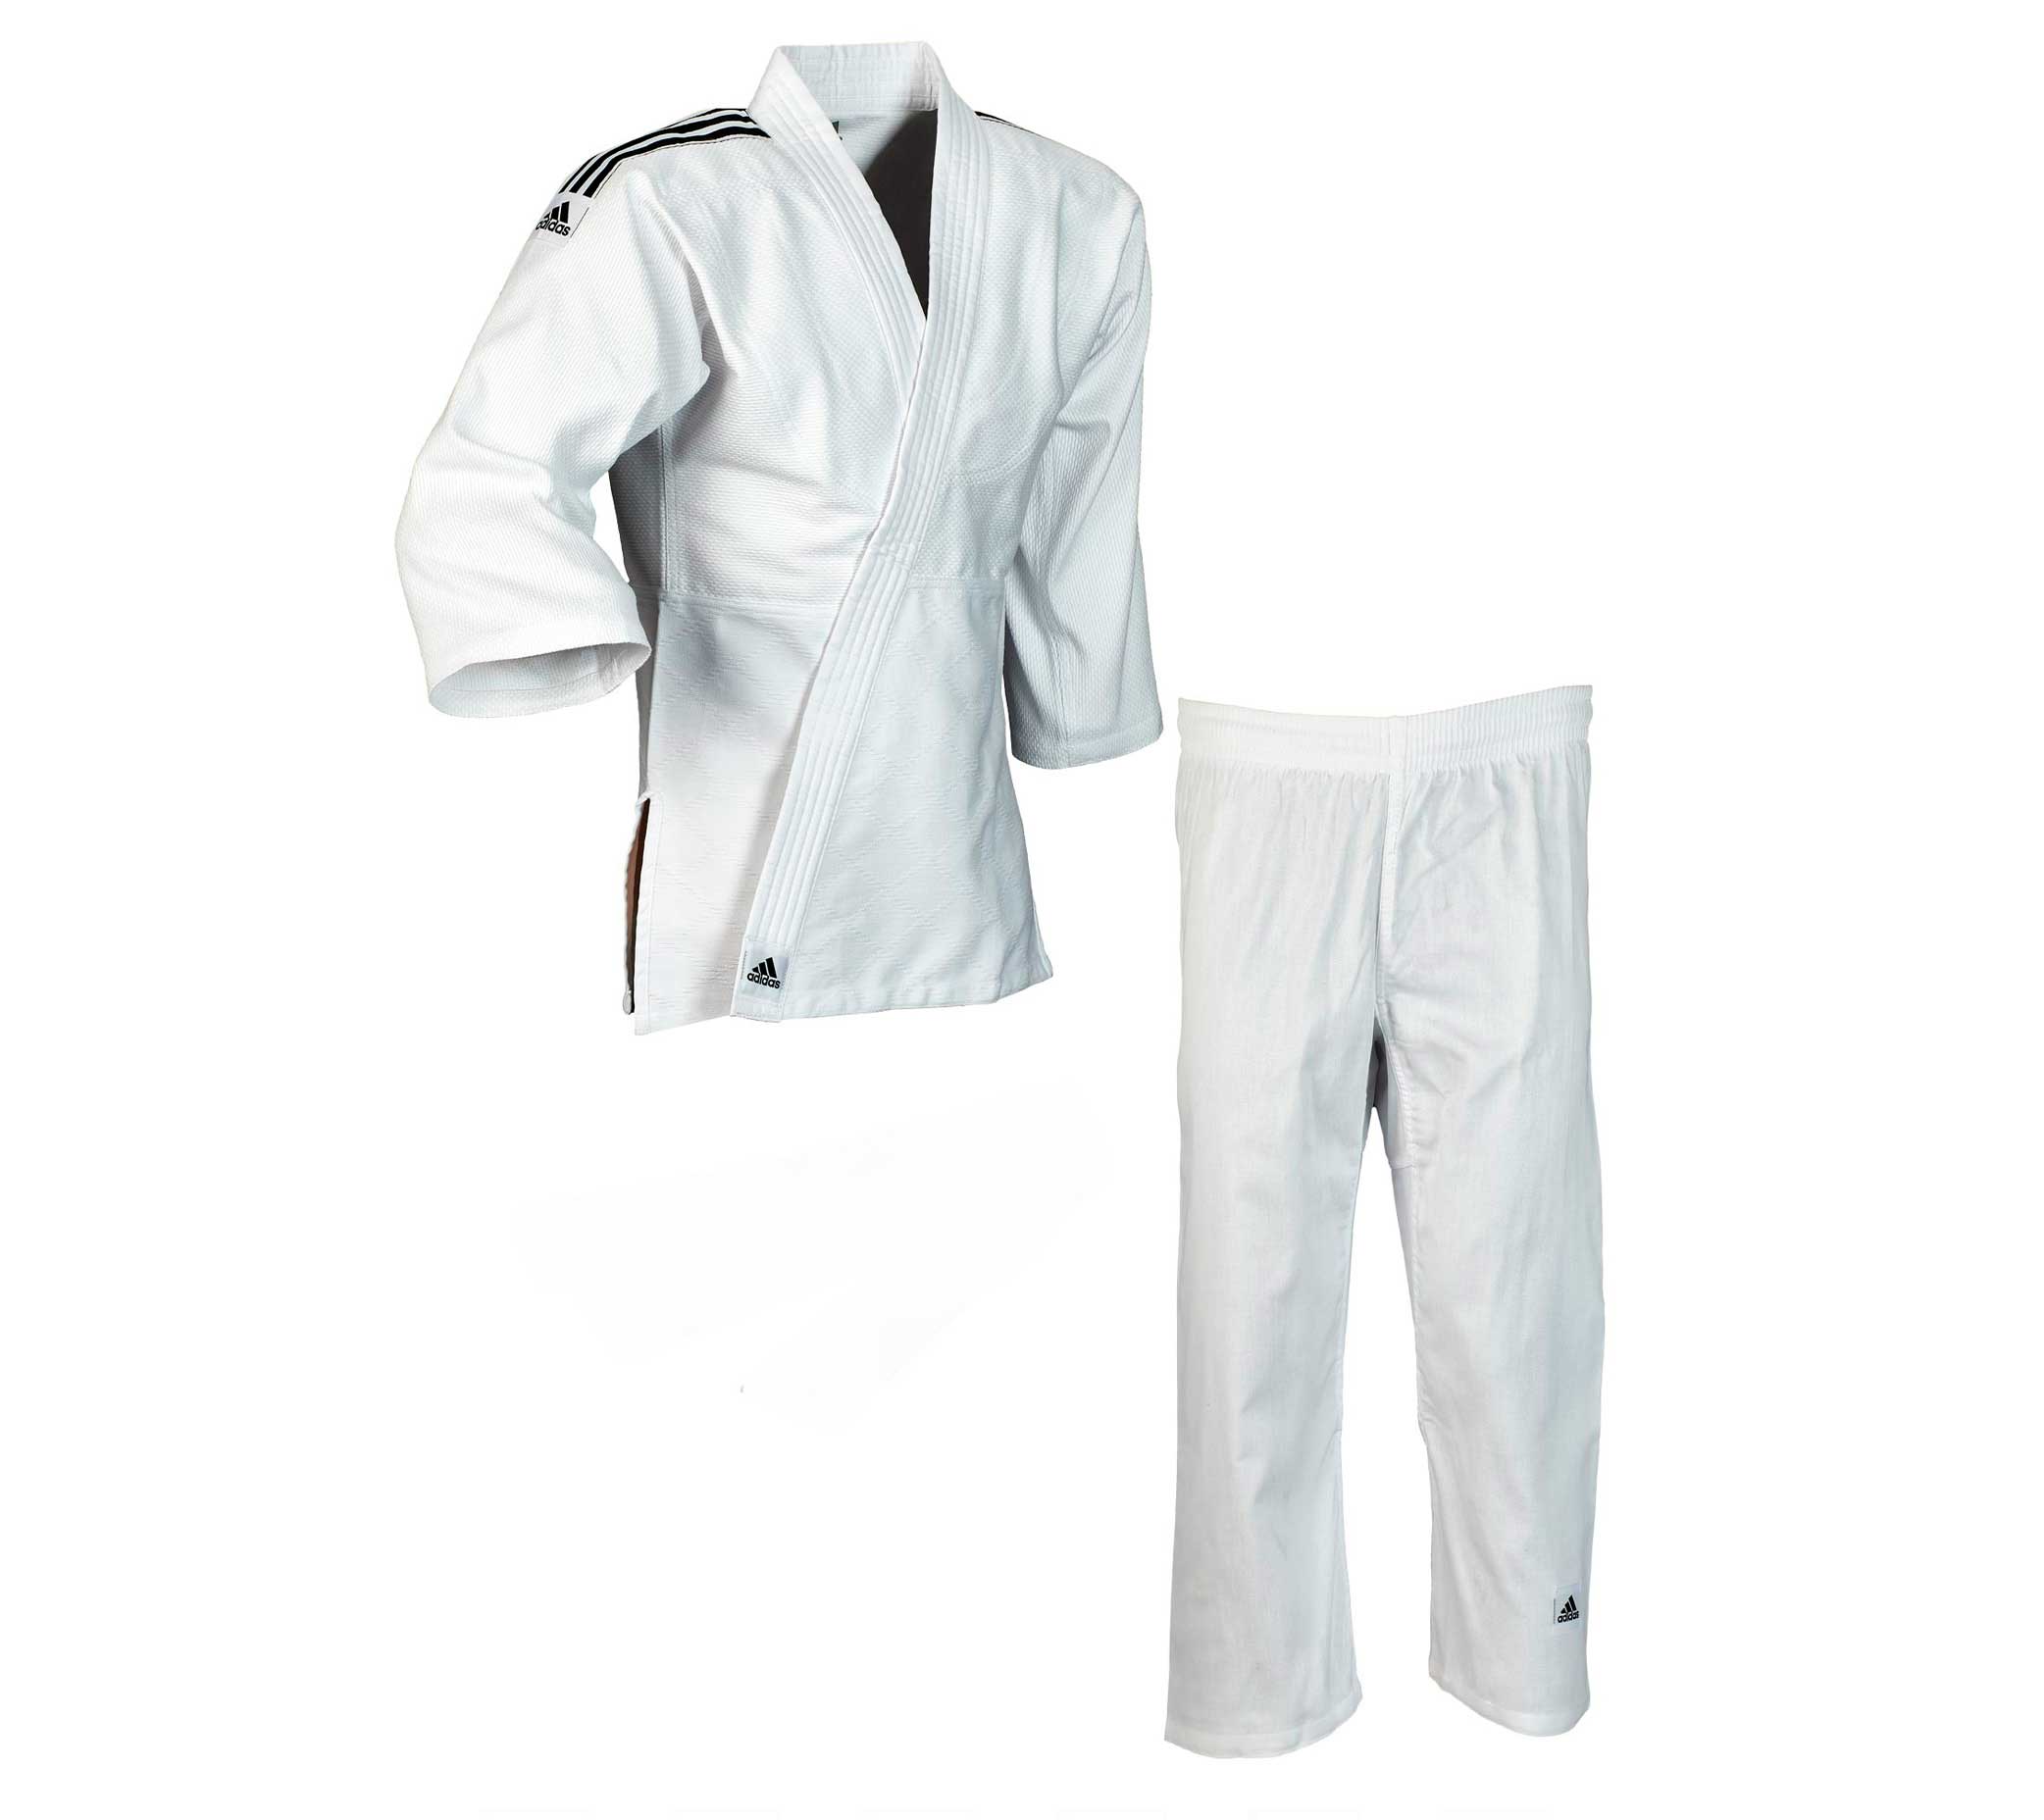 Кимоно для дзюдо подростковое Club белое с черными полосками (размер 160 см)